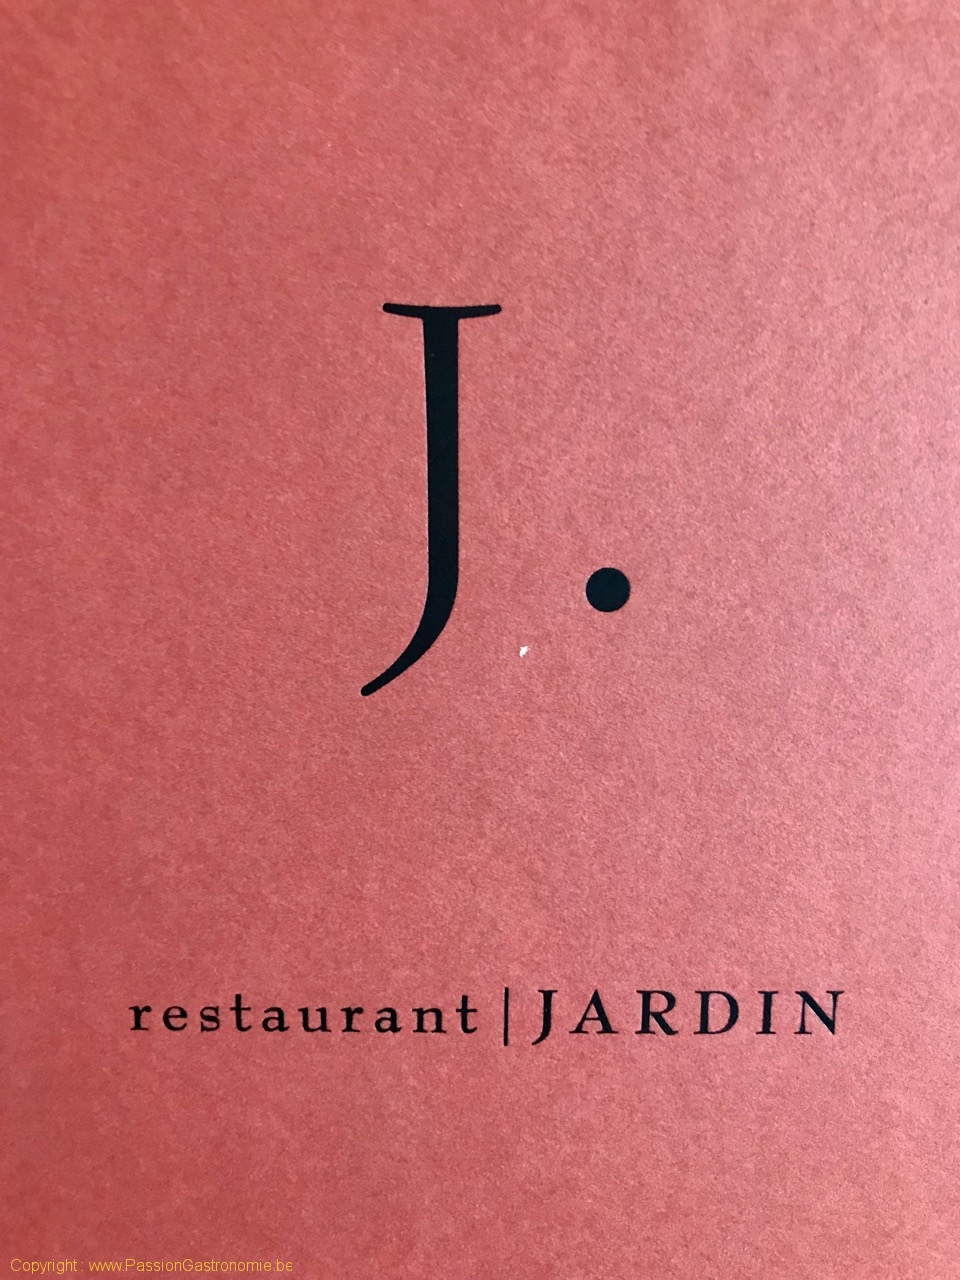 Restaurant Jardin - Le logo